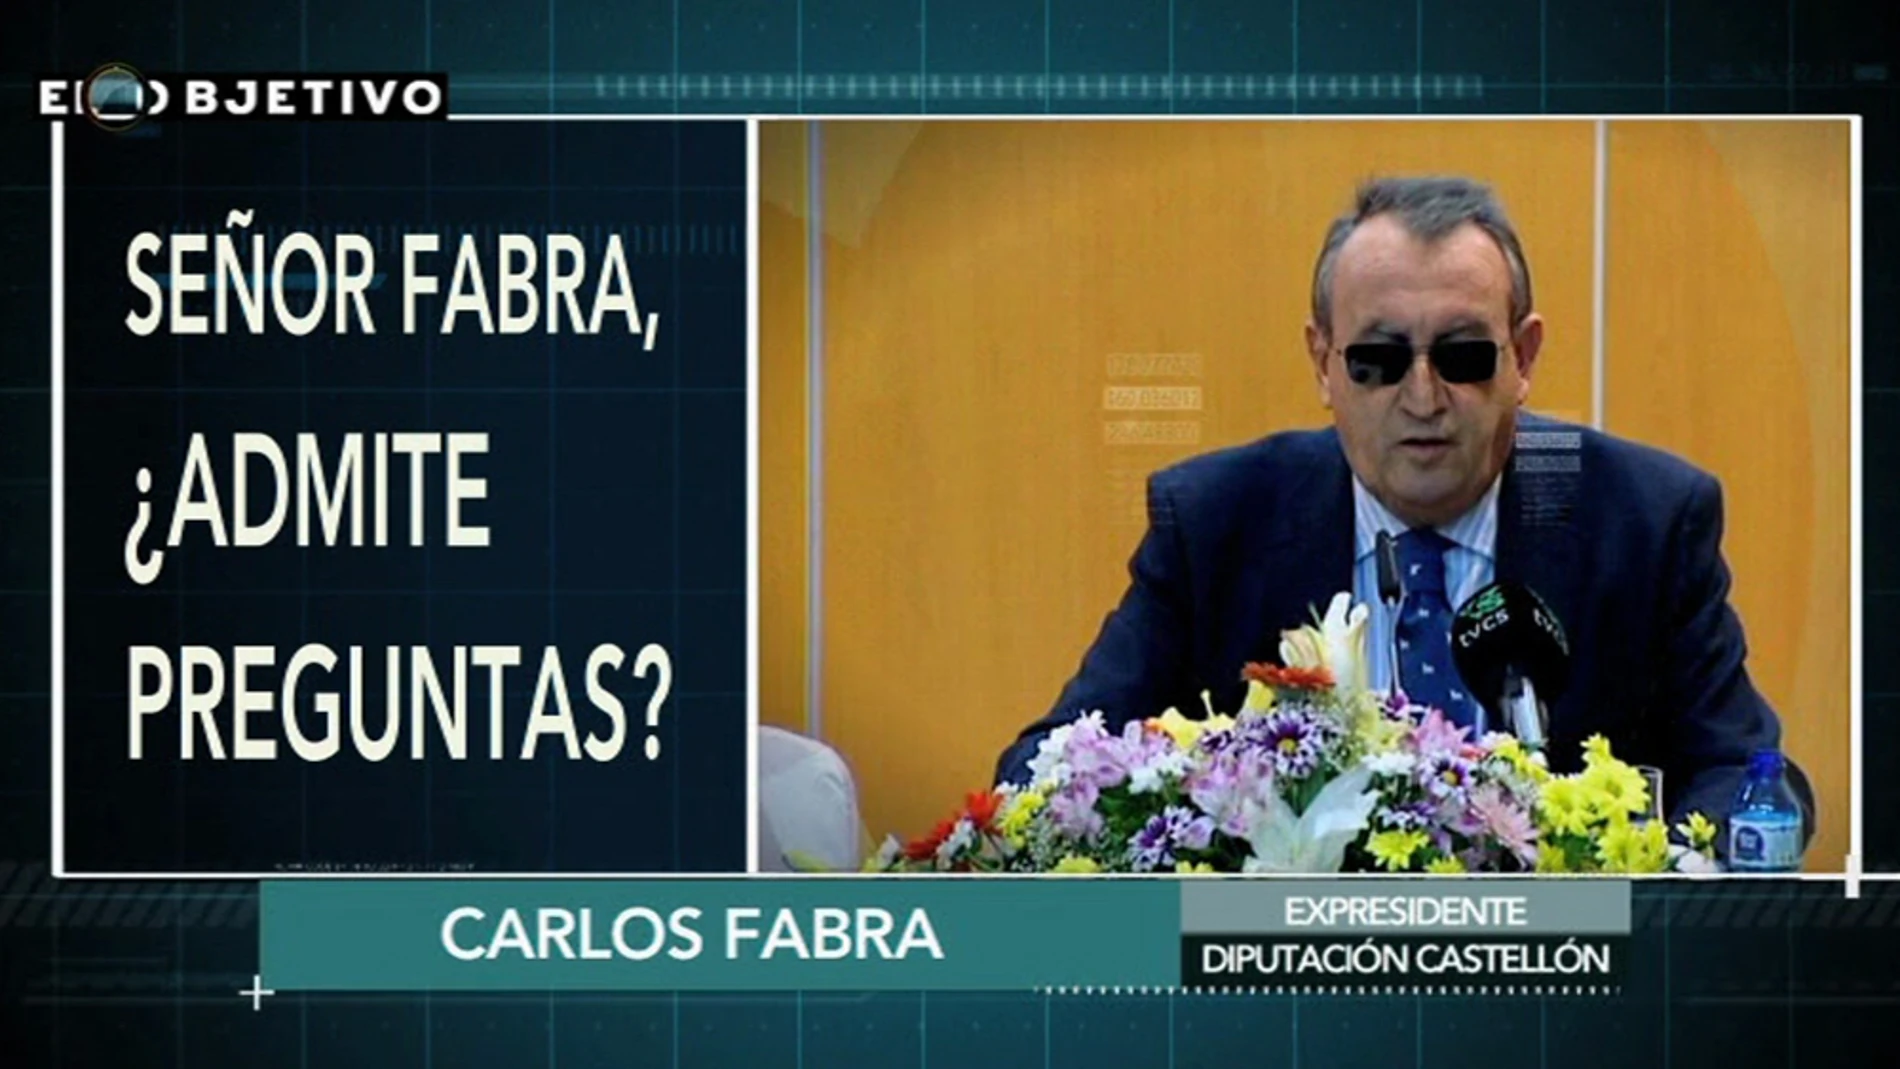 "¿Admite preguntas, señor Fabra?" "Depende de qué preguntas"